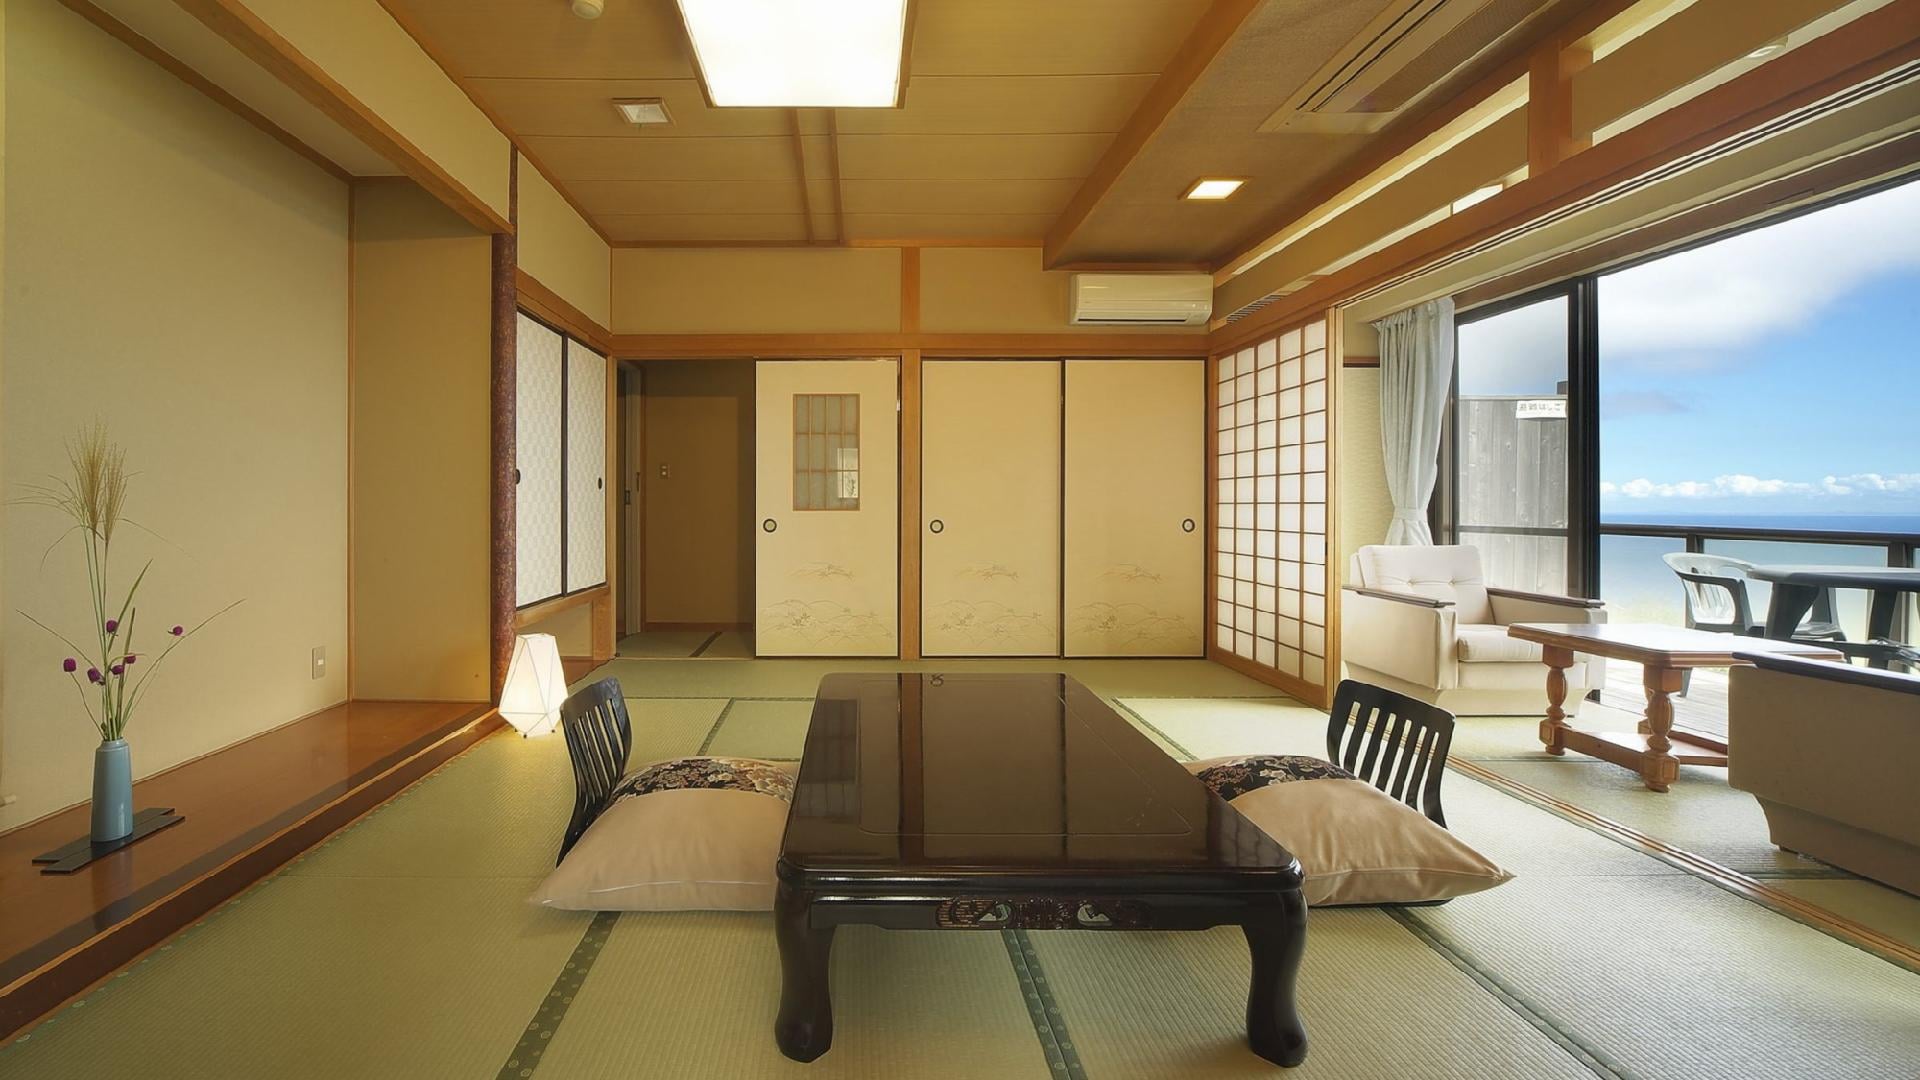 [ห้องพักผ่อนสไตล์ญี่ปุ่น] ฟูจิชั้น 1 10 เสื่อทาทามิ ห้องสไตล์ญี่ปุ่น + ห้องส่วนตัวพร้อมอ่างอาบน้ำกลางแจ้ง (อนุญาตให้เด็กเข้าพัก)